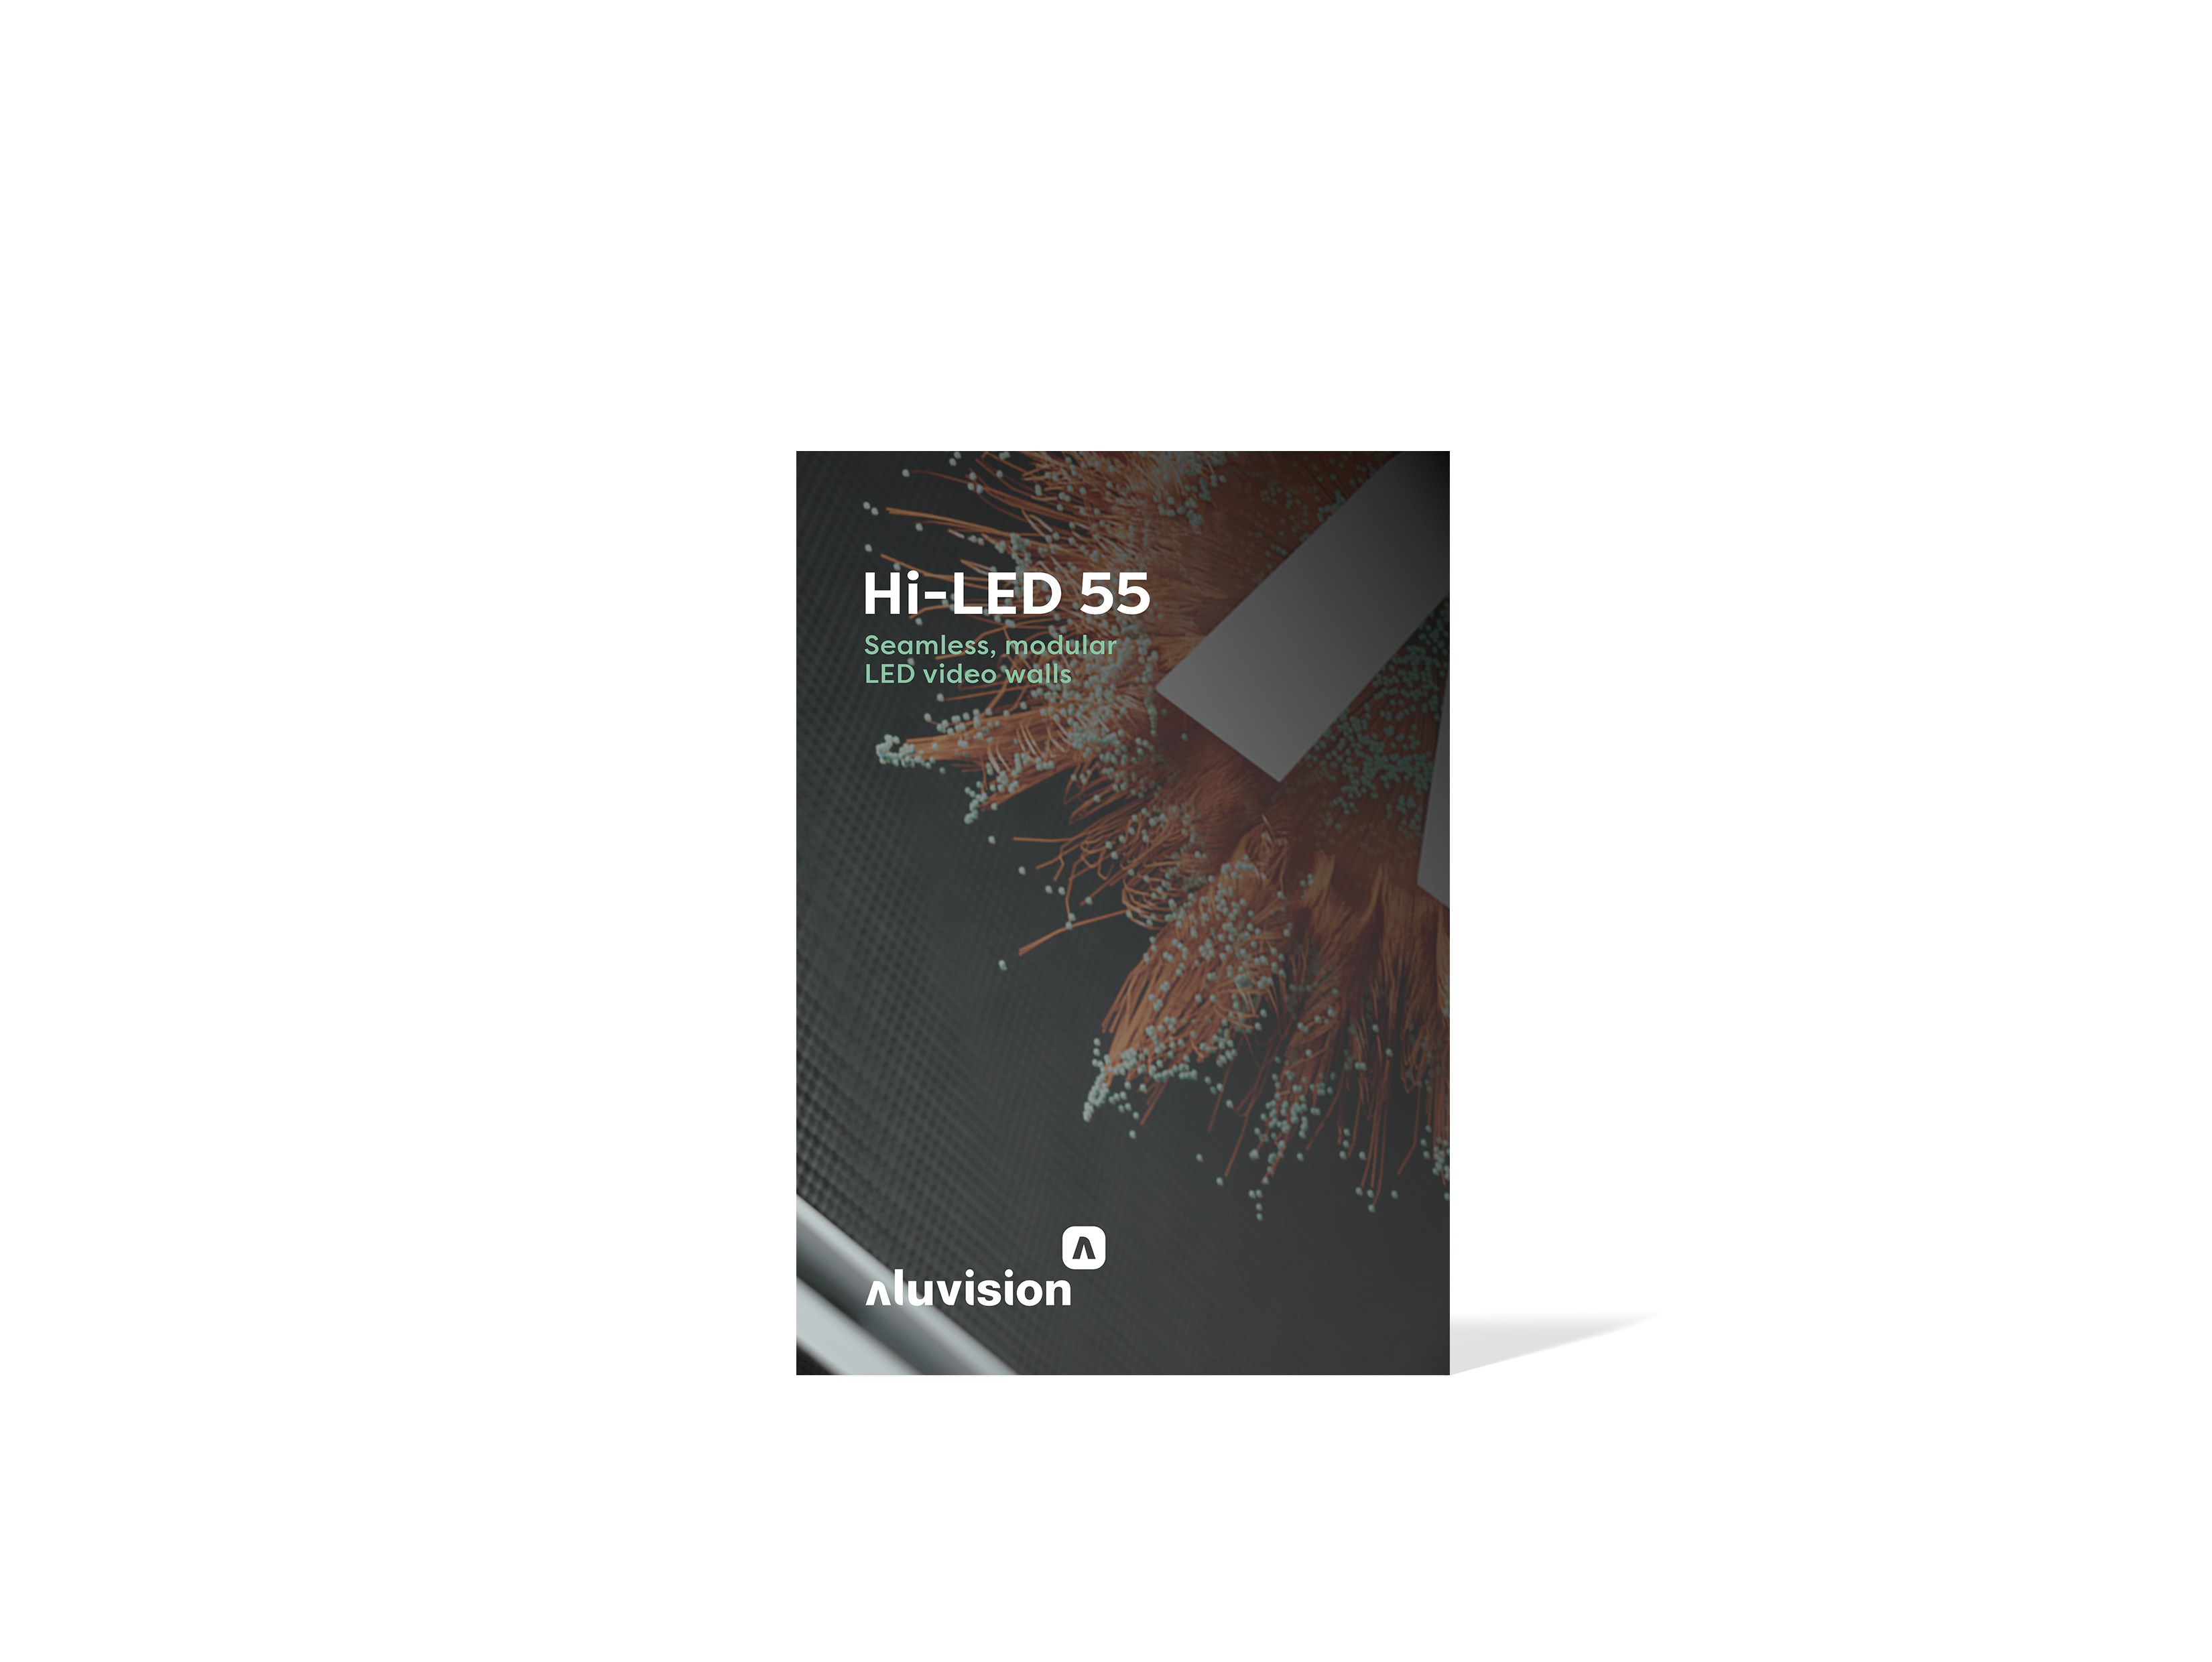 Hi-LED 55 brochure